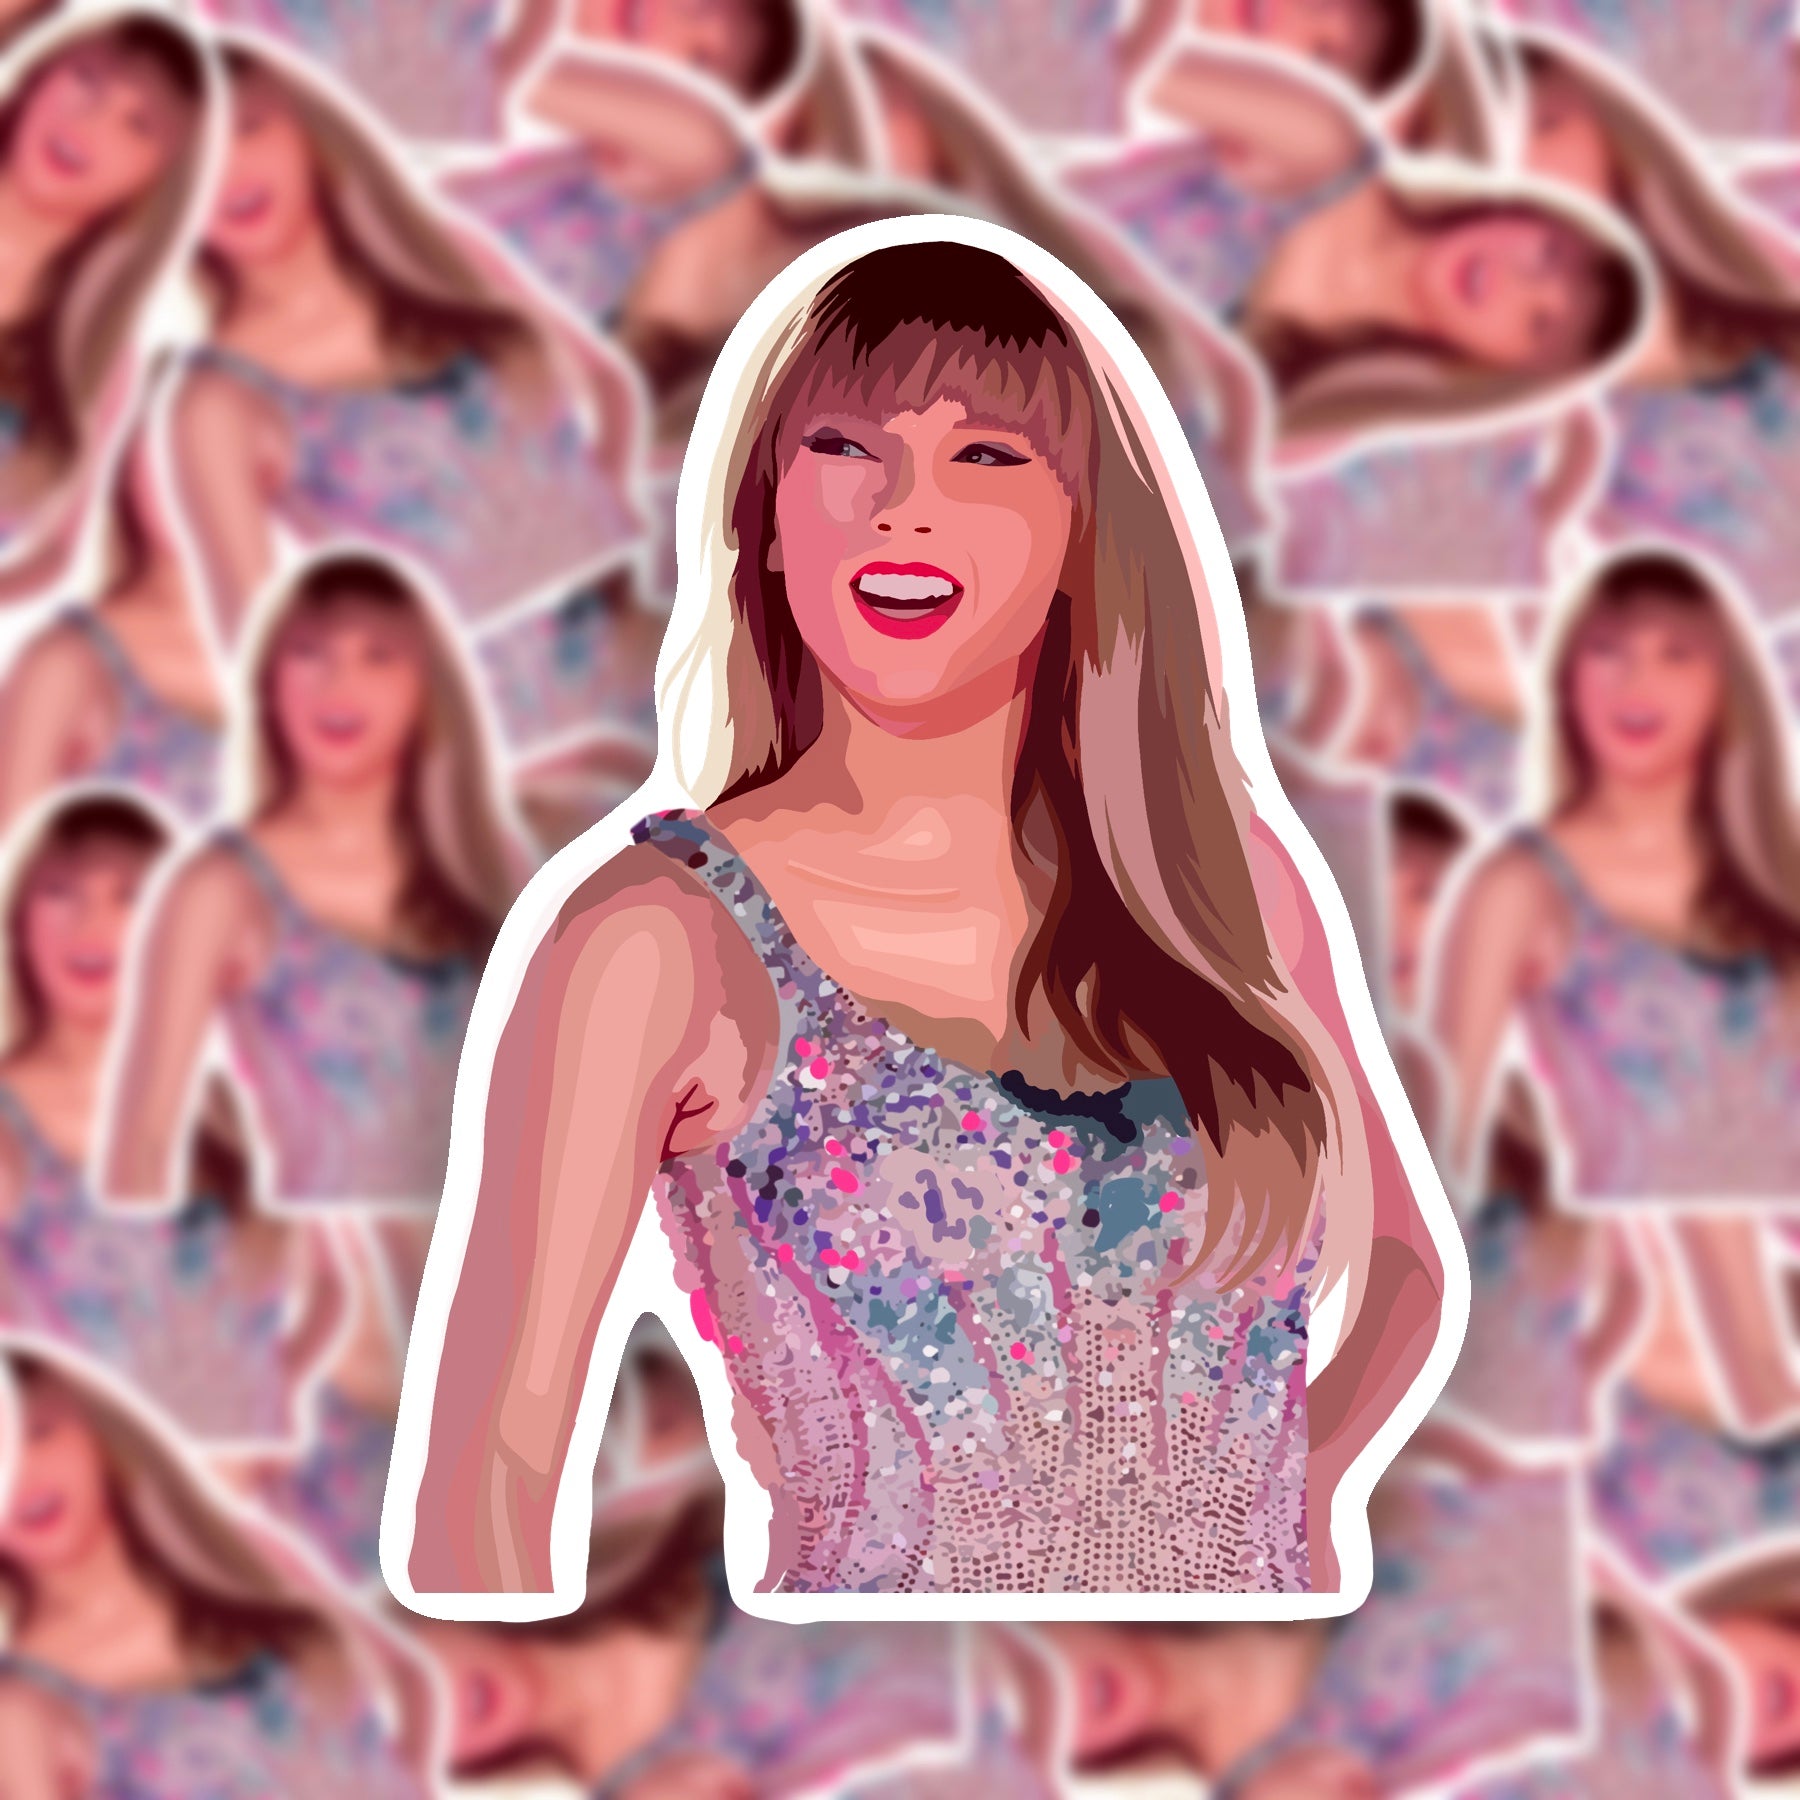 Taylor Swift Eras Tour Lover | Sticker